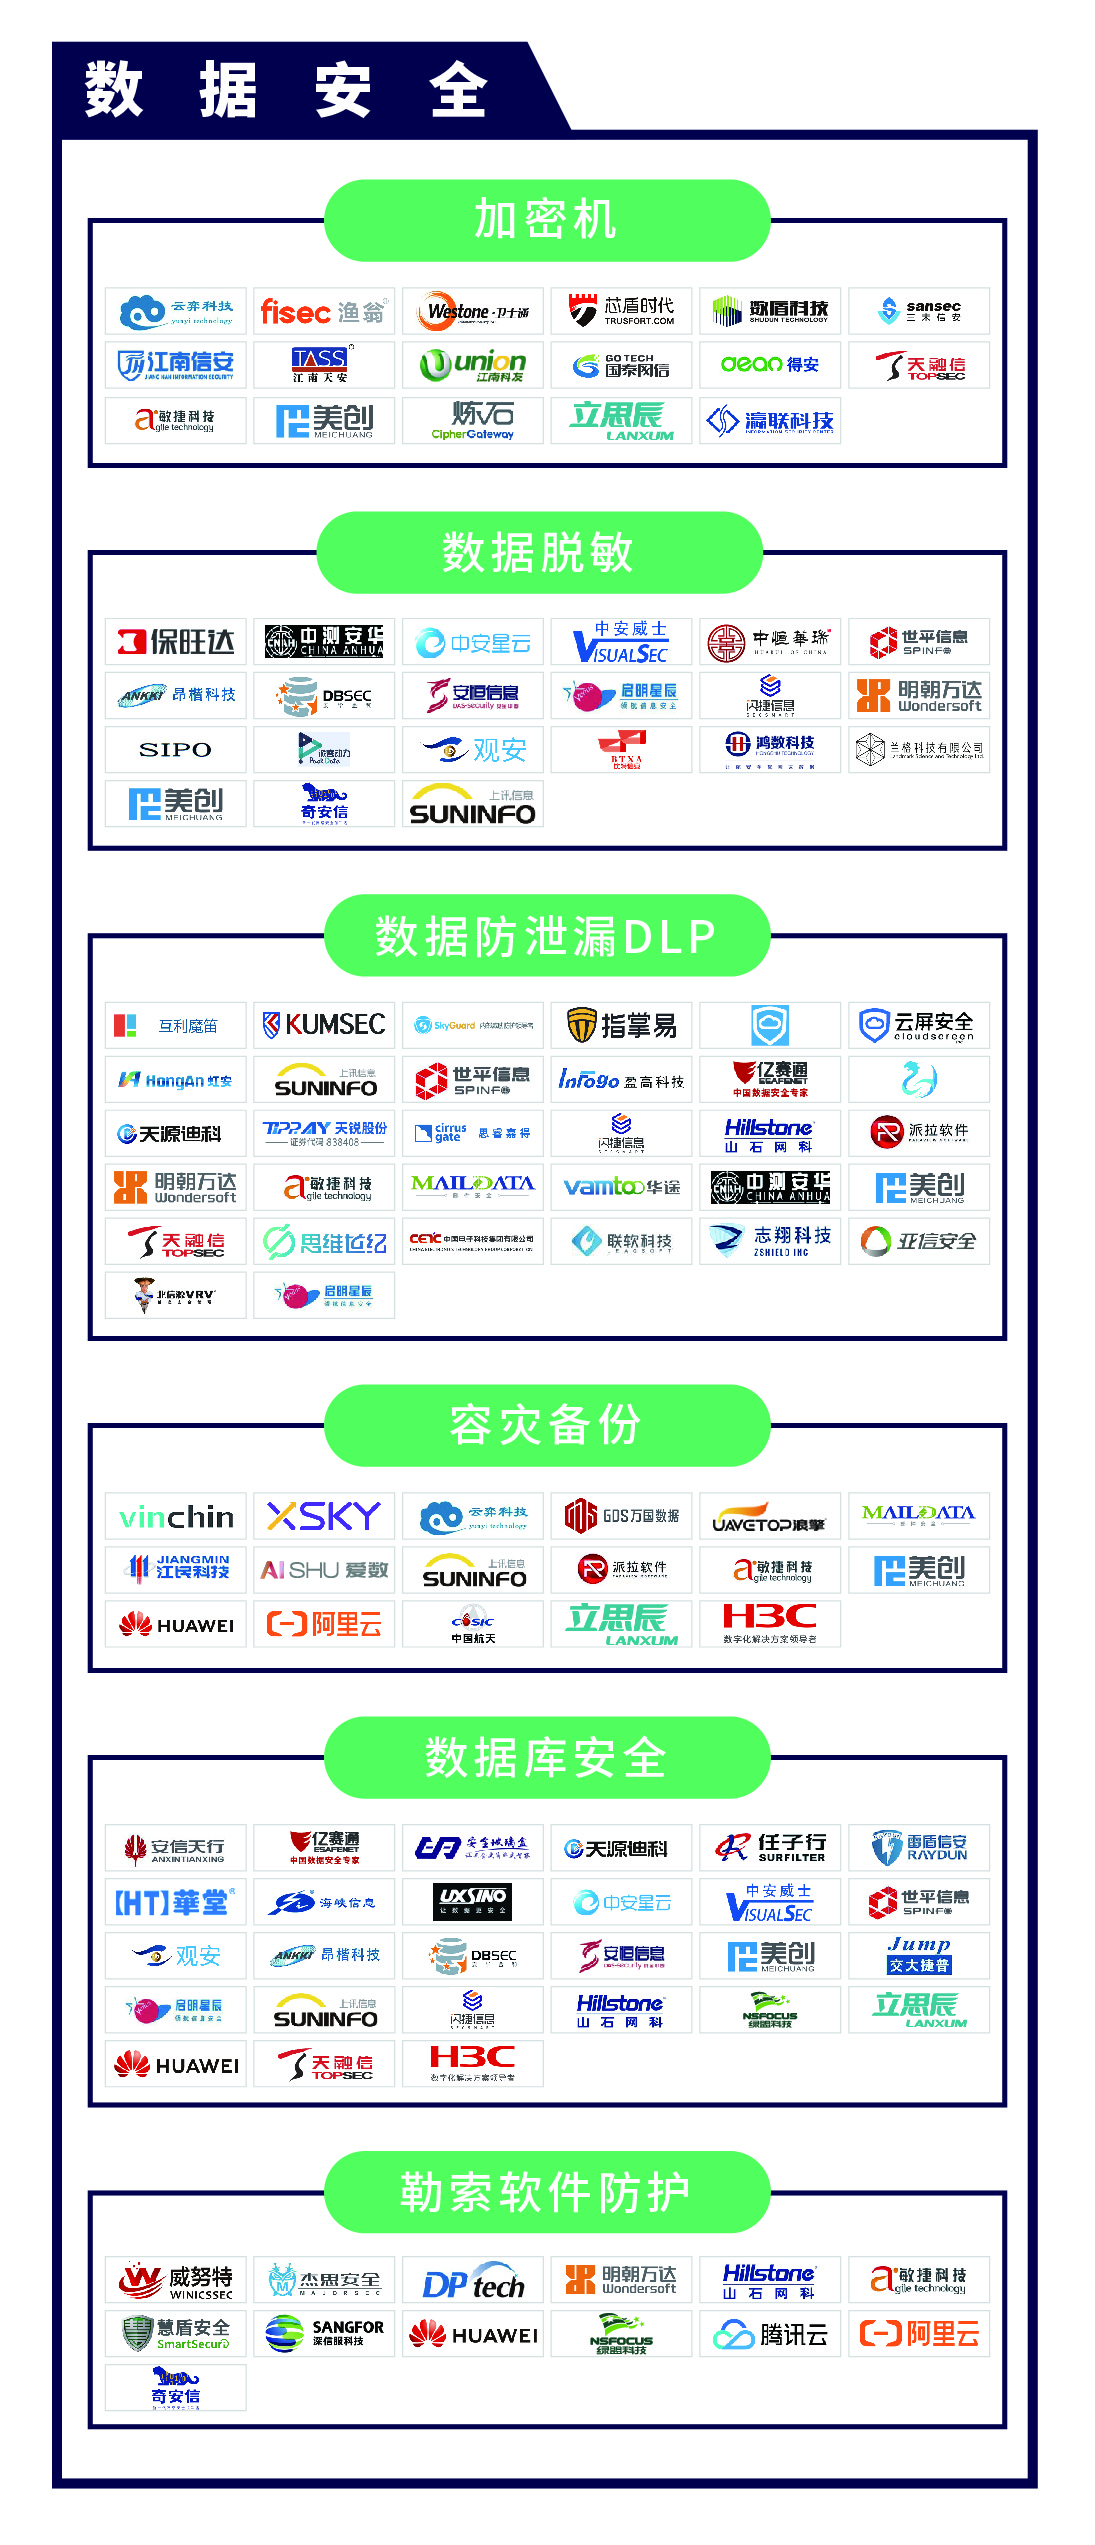 《CCSIP 2020中国网络安全产业全景图》正式发布 | FreeBuf咨询-第11张图片-网盾网络安全培训